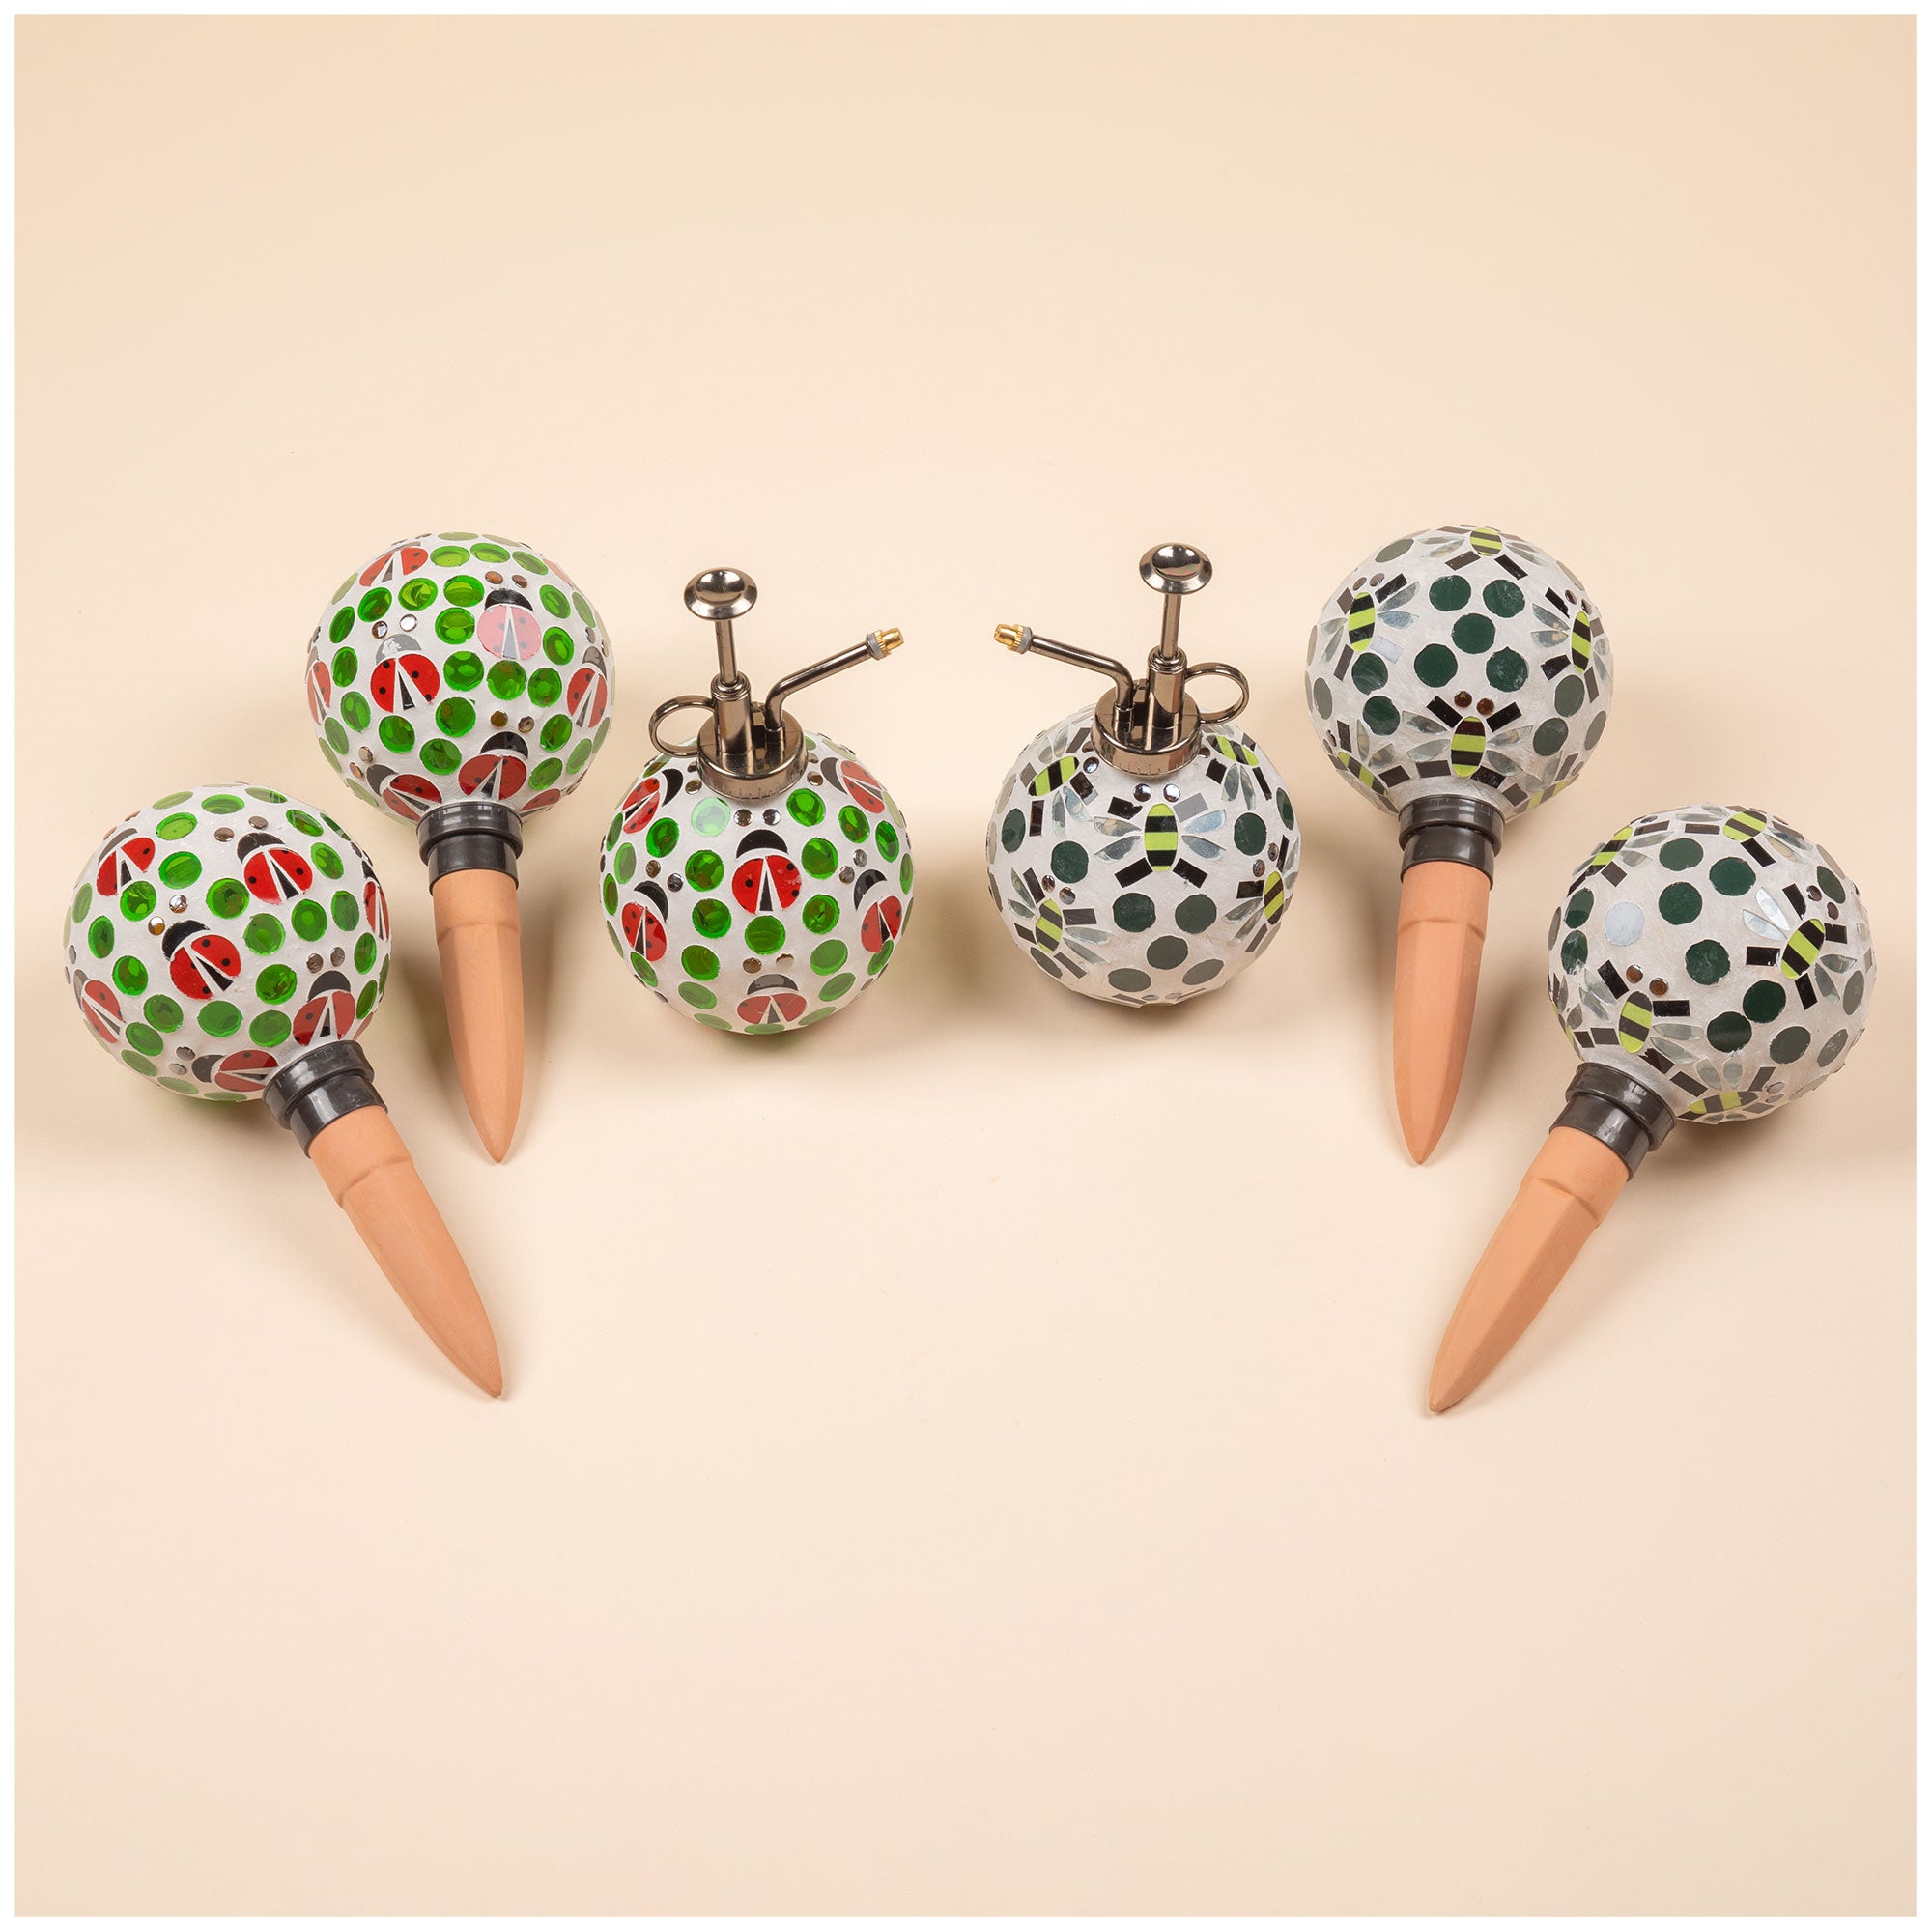 Mosaic Glass Plant Watering Globe & Mister - Set Of 3 - Ladybug